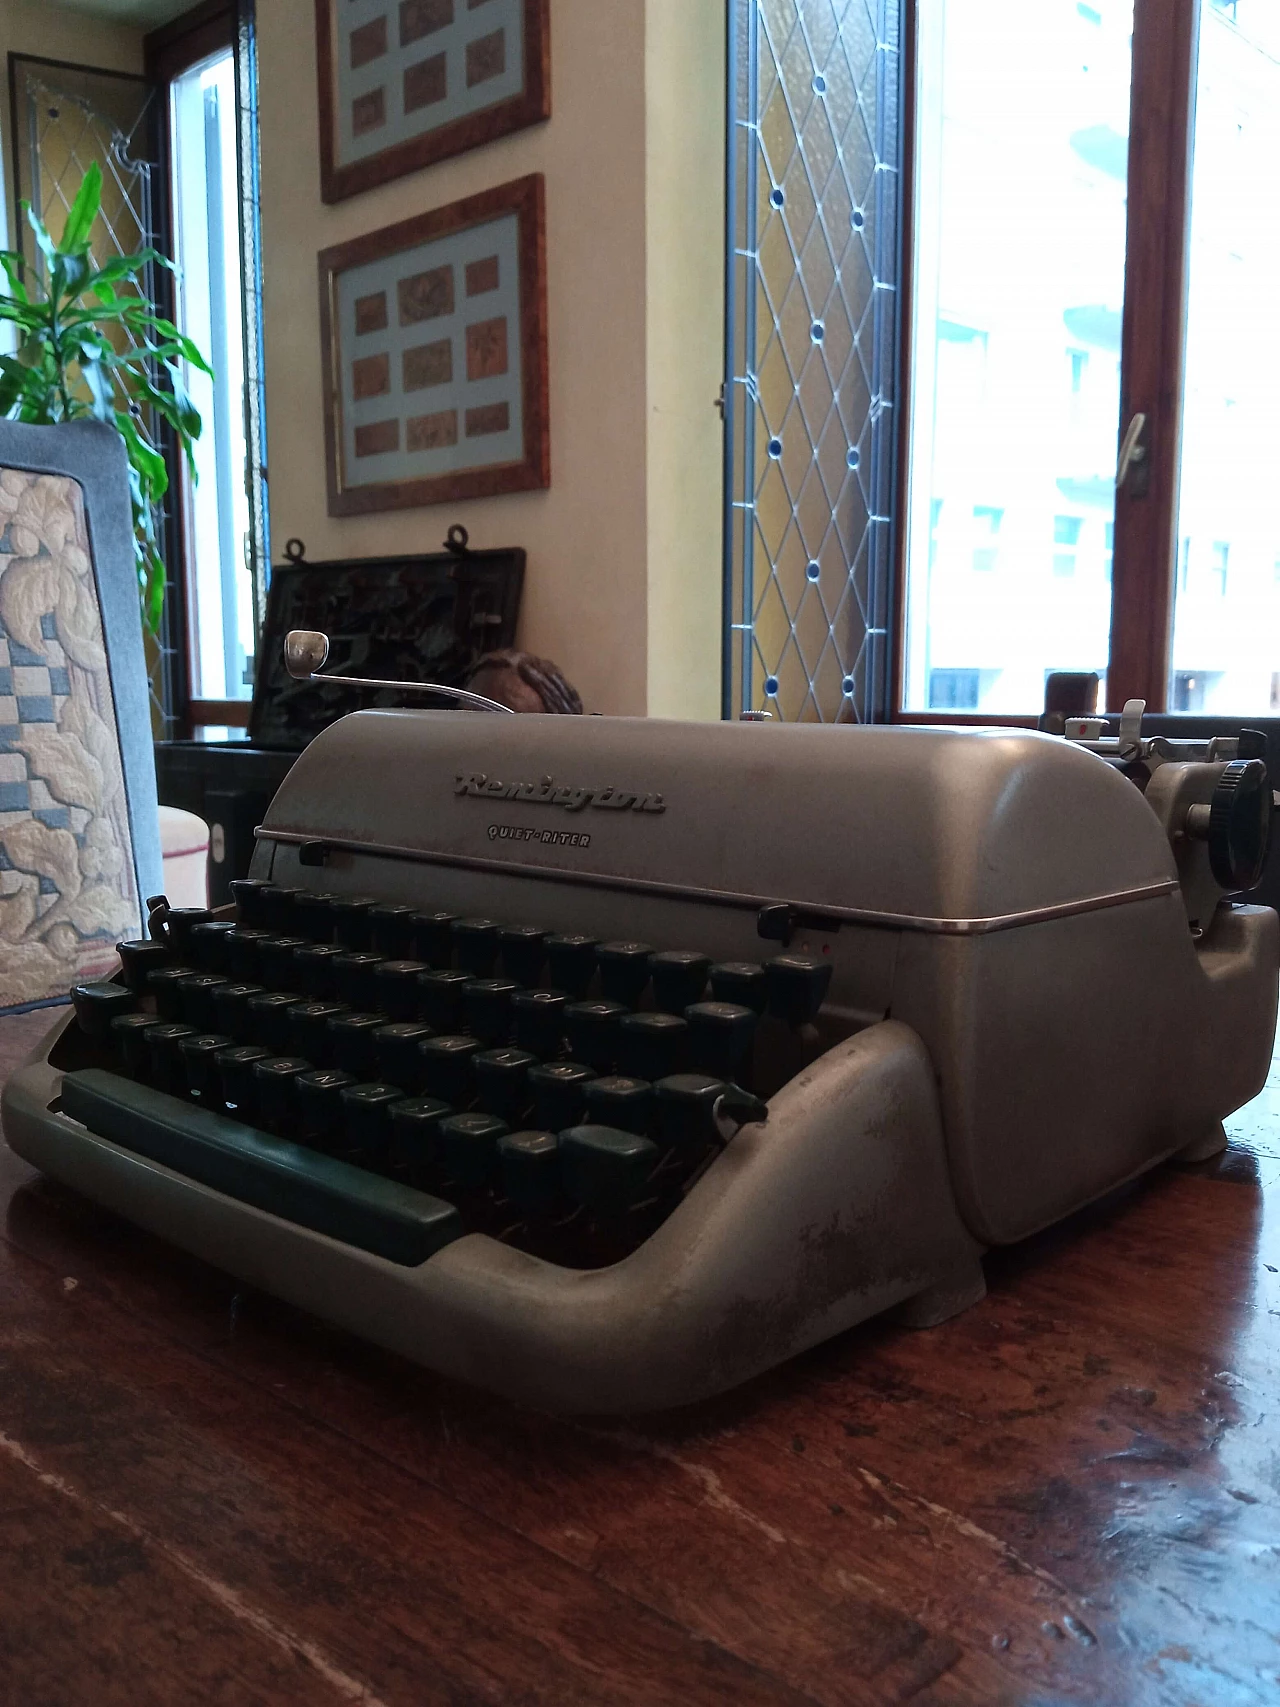 Remington Quiet-Riter typewriter, 1960s 4